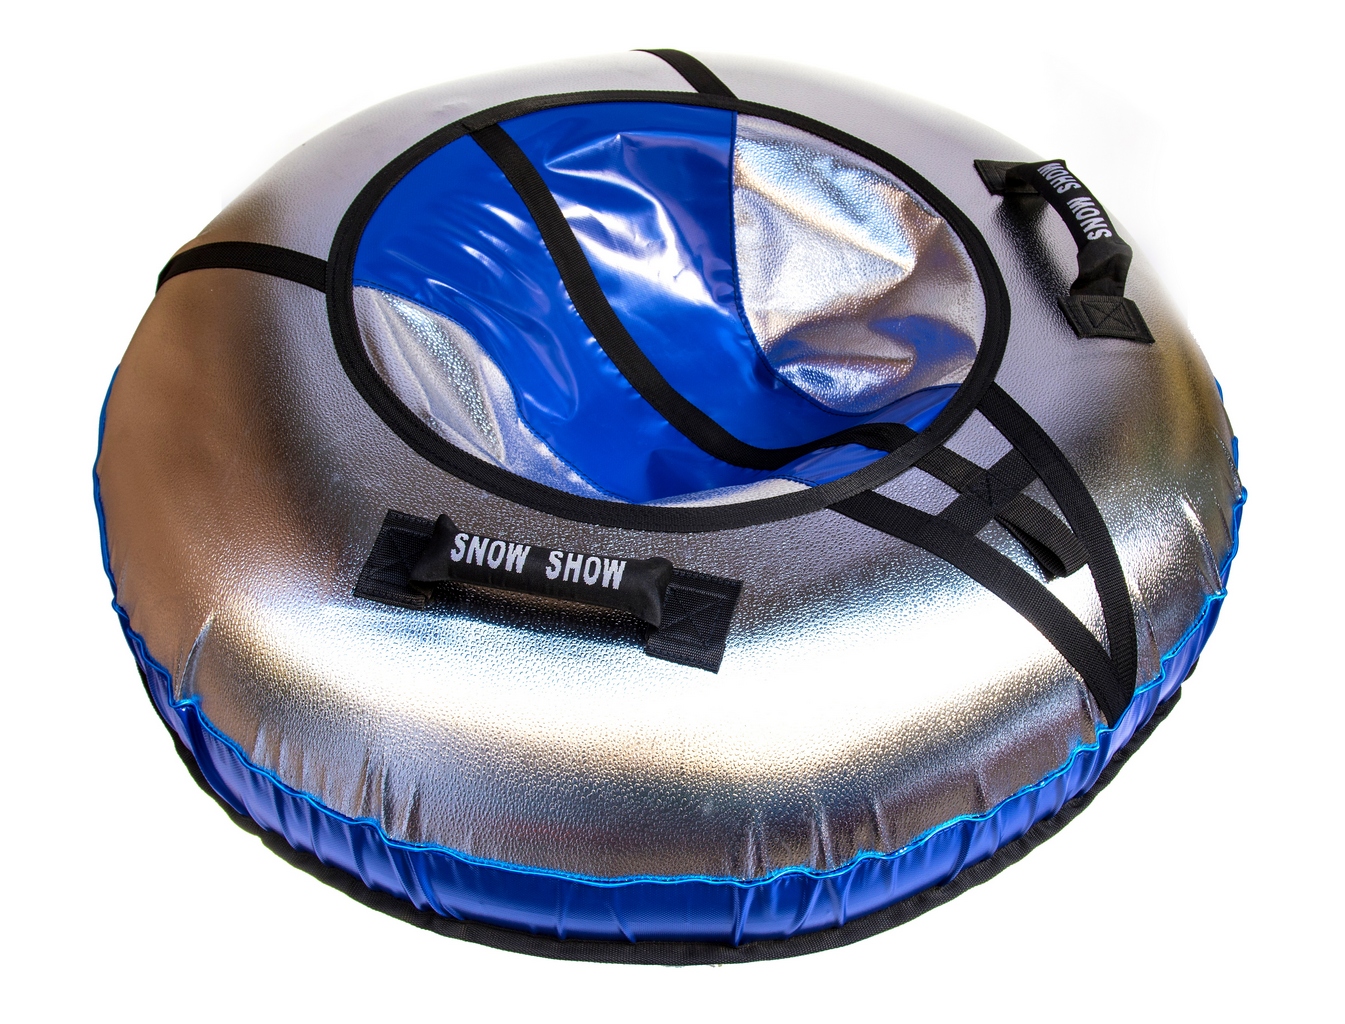 Тюбинг-санки надувные RT NEO со светодиодами синий, диаметр 105 см в магазине радиоуправляемых моделей City88